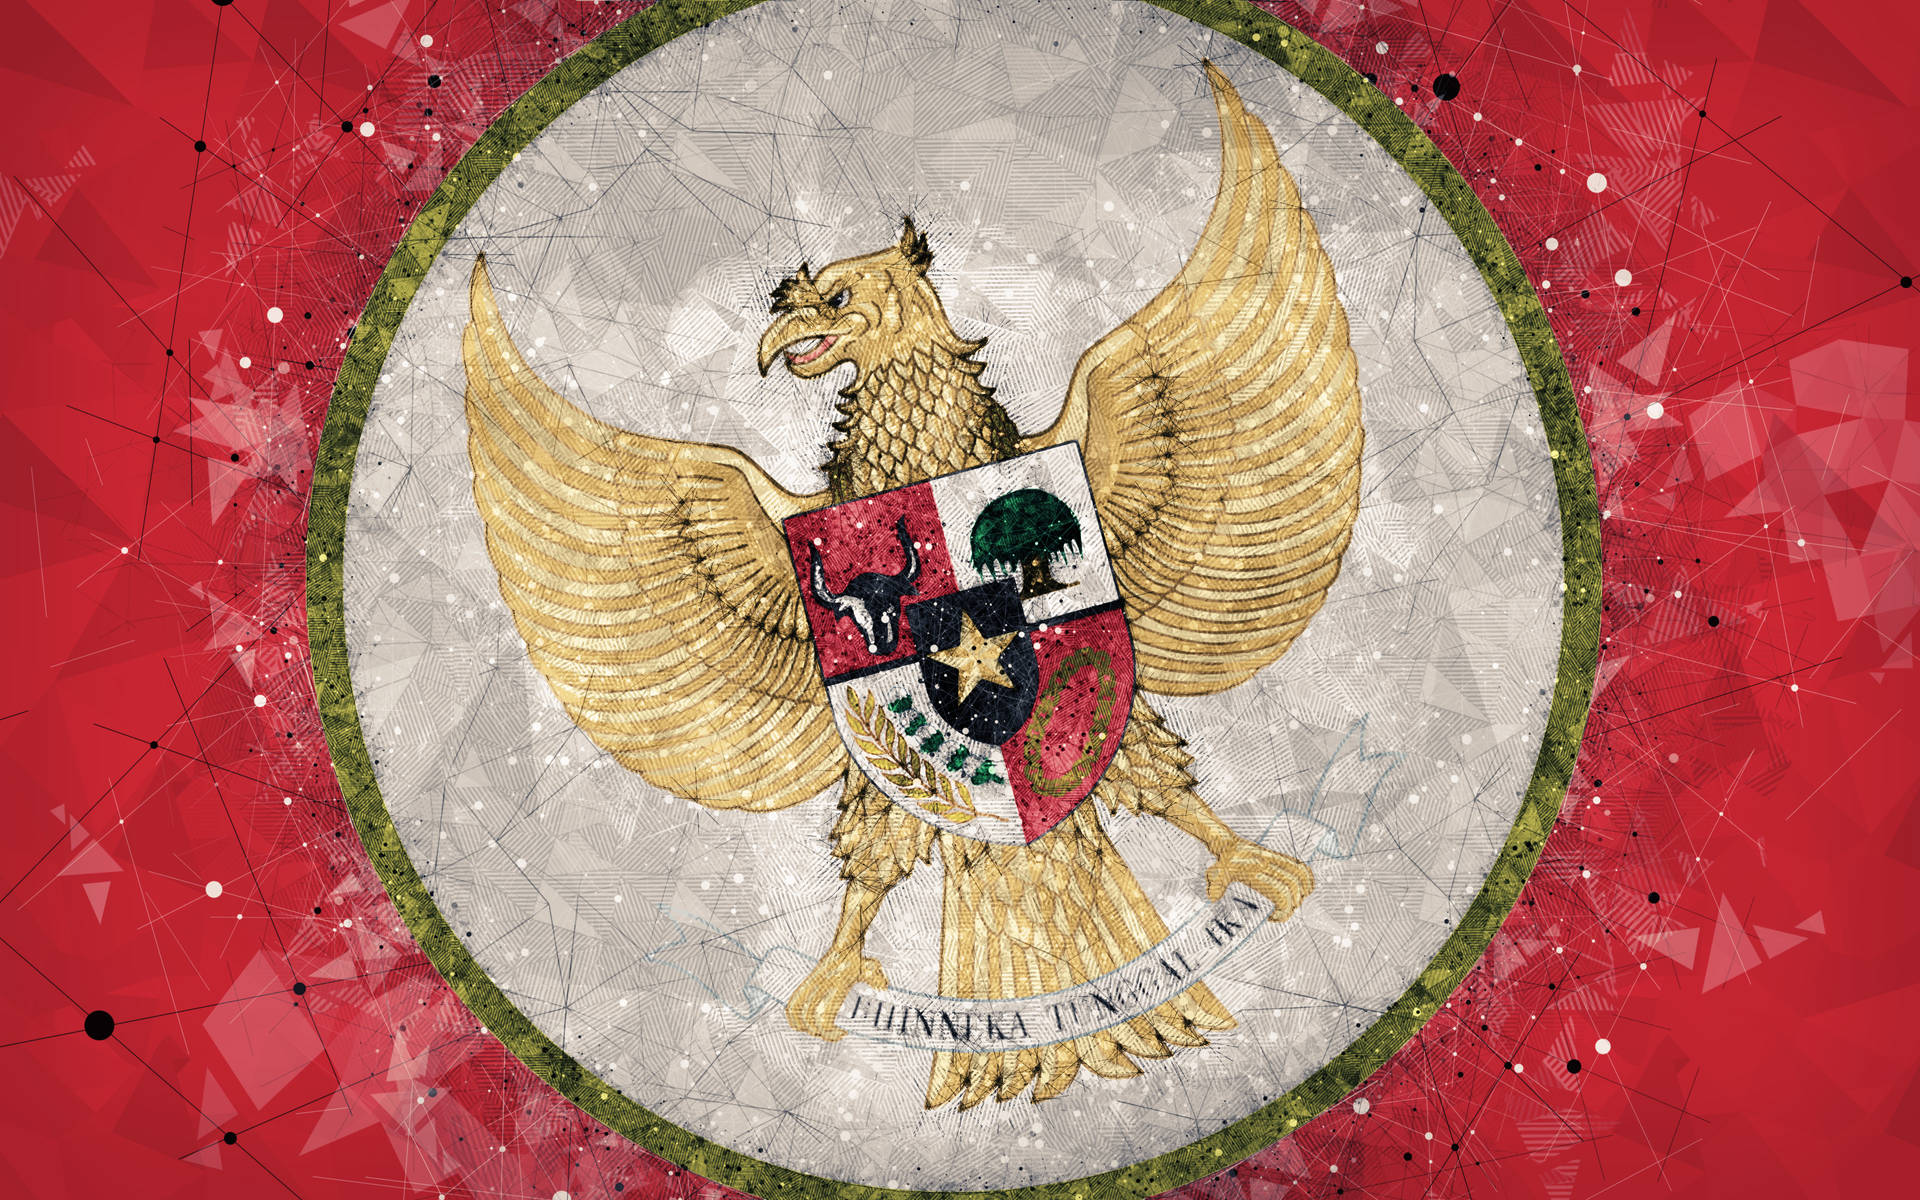 Caption: Indonesian National Emblem - Garuda Pancasila Background